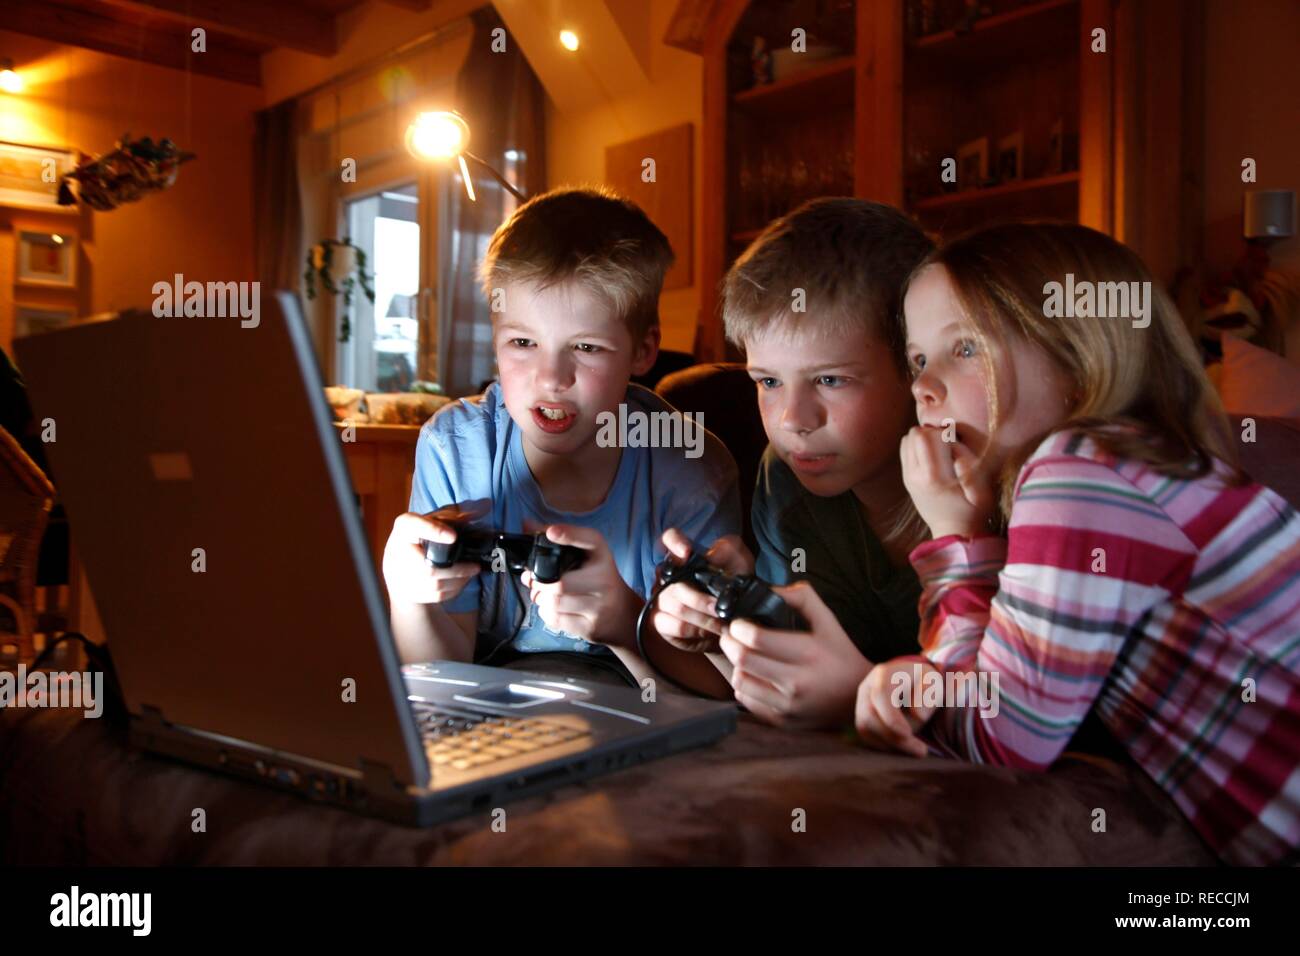 Hermanos, 7, 11, 13 años de edad, con ordenador portátil en el salón, jugando a un videojuego de carreras de coches Foto de stock